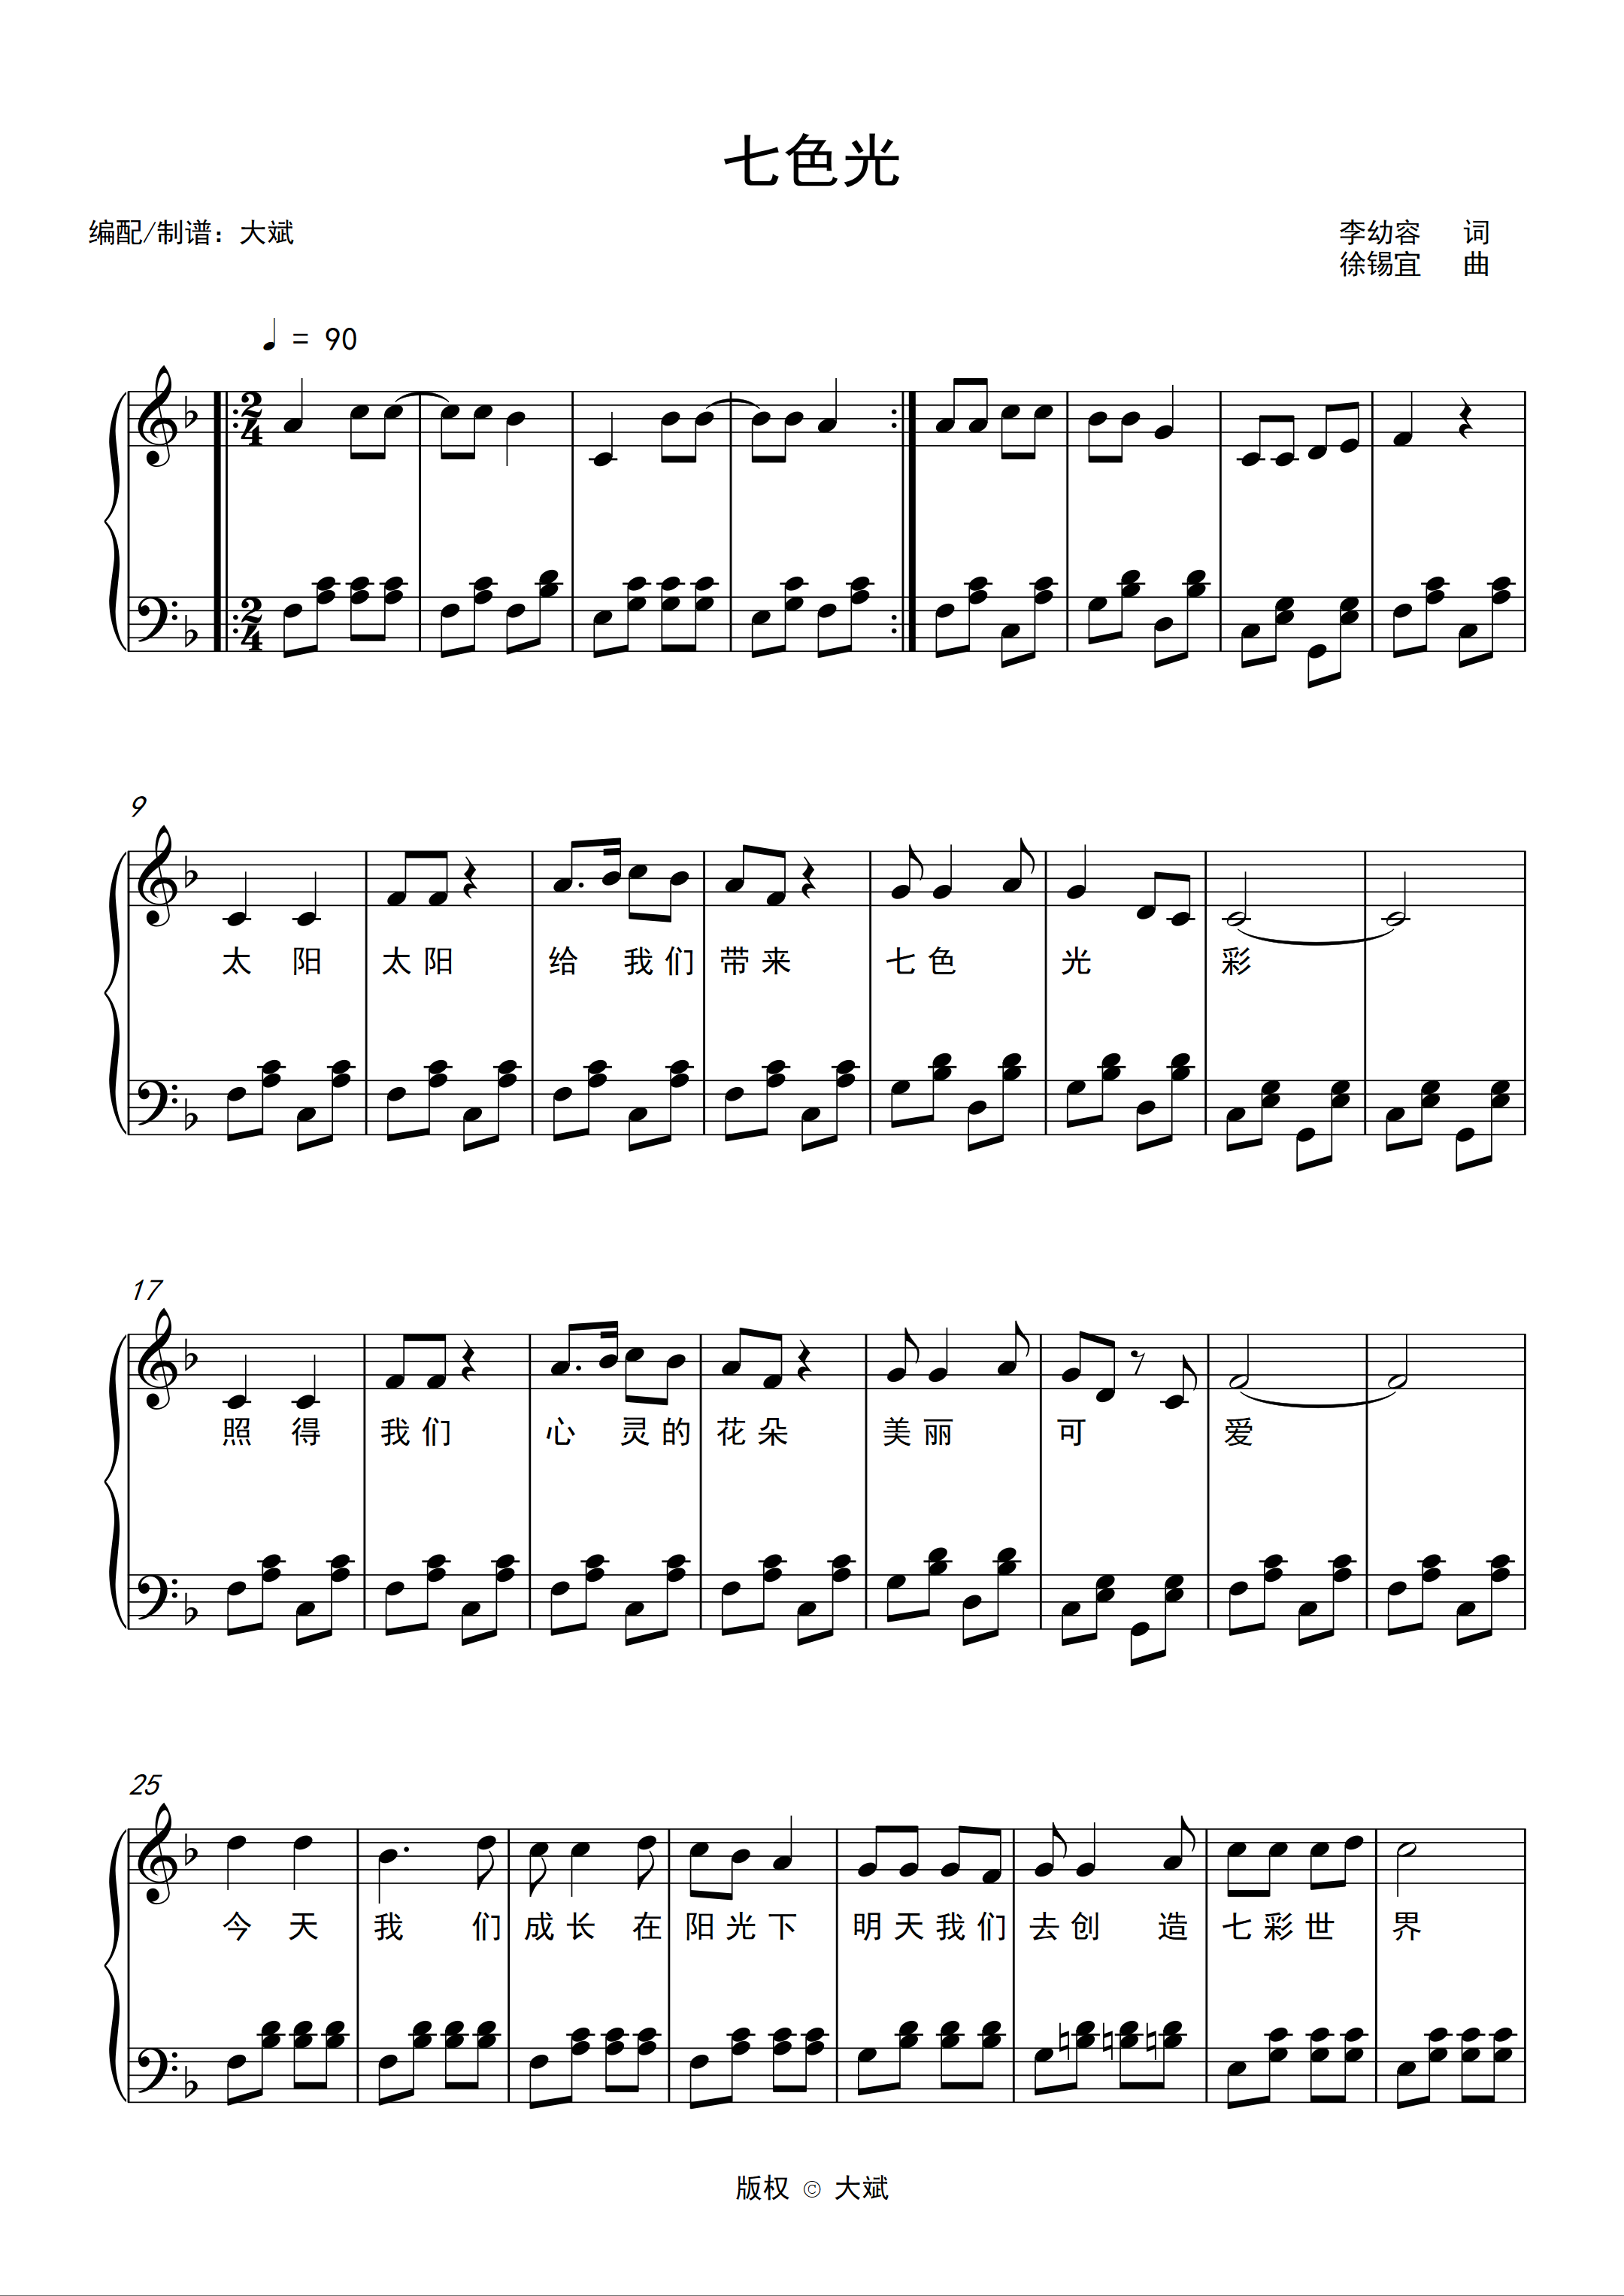 中国名歌《七色光之歌》歌曲简谱-简谱大全 - 乐器学习网